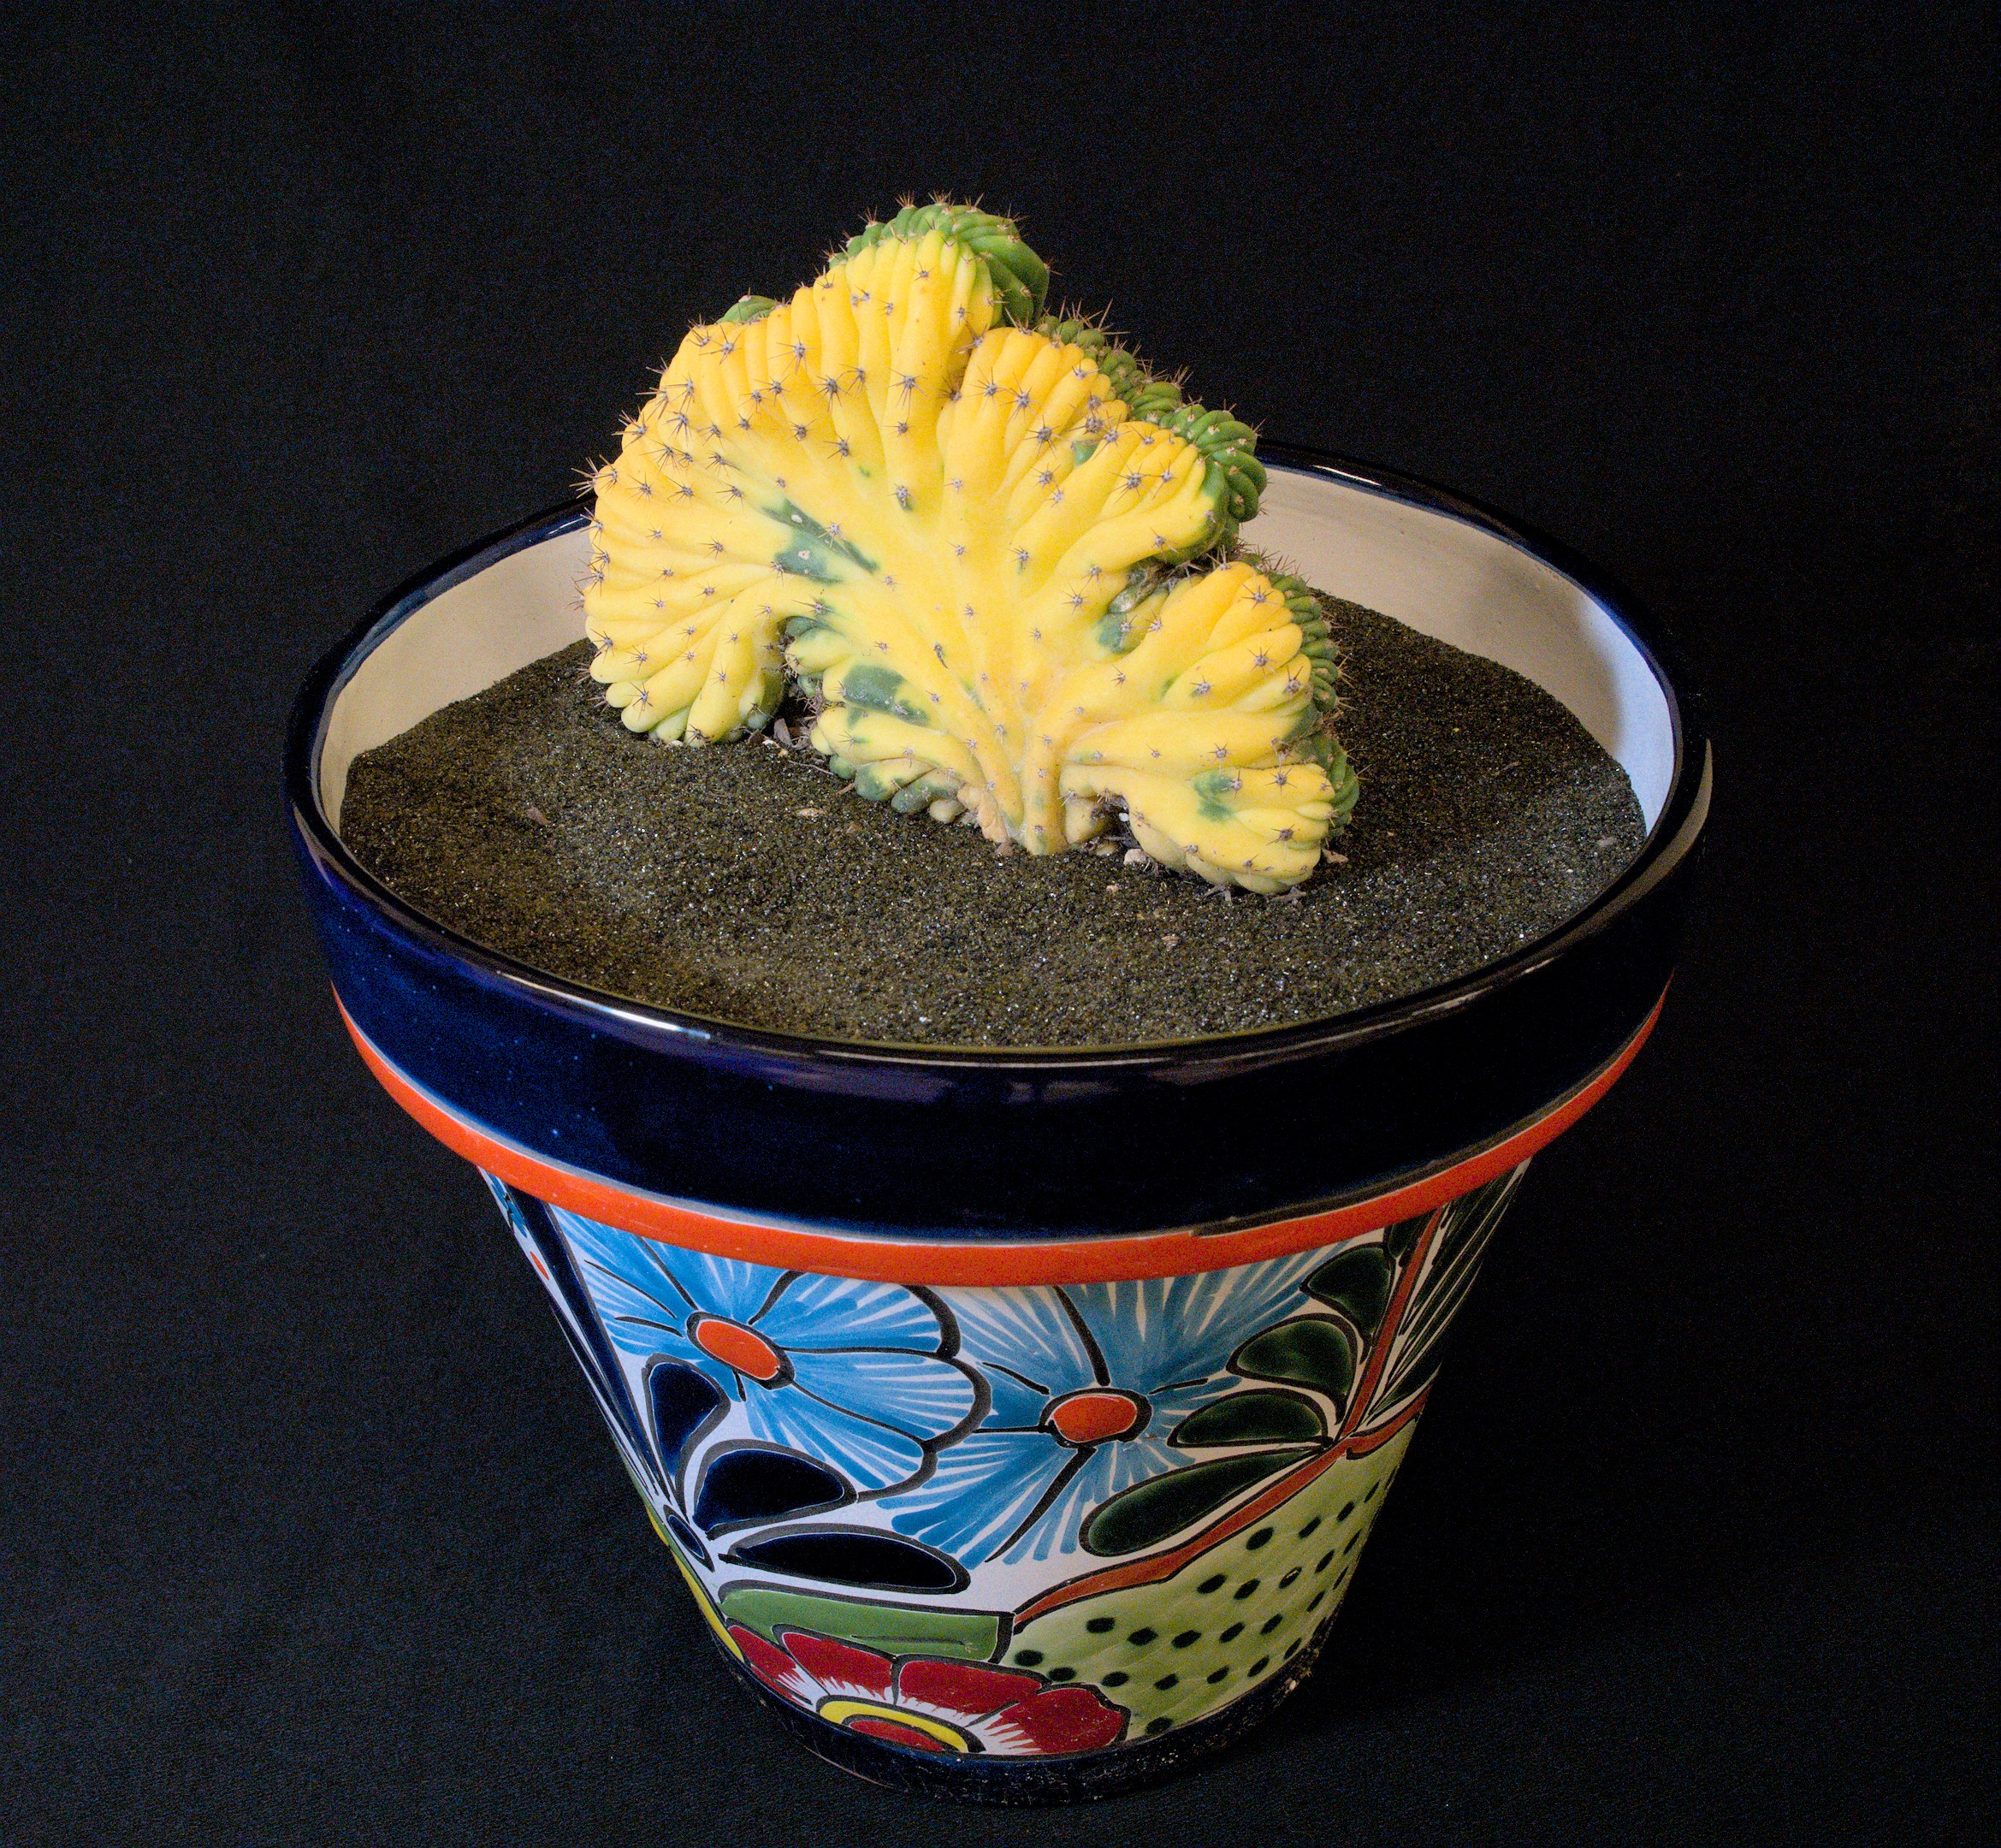 SCCSS 2022 September - Winner Novice Cactus - Vincent Darmali - Myrtillocactus geometrizans cristatus